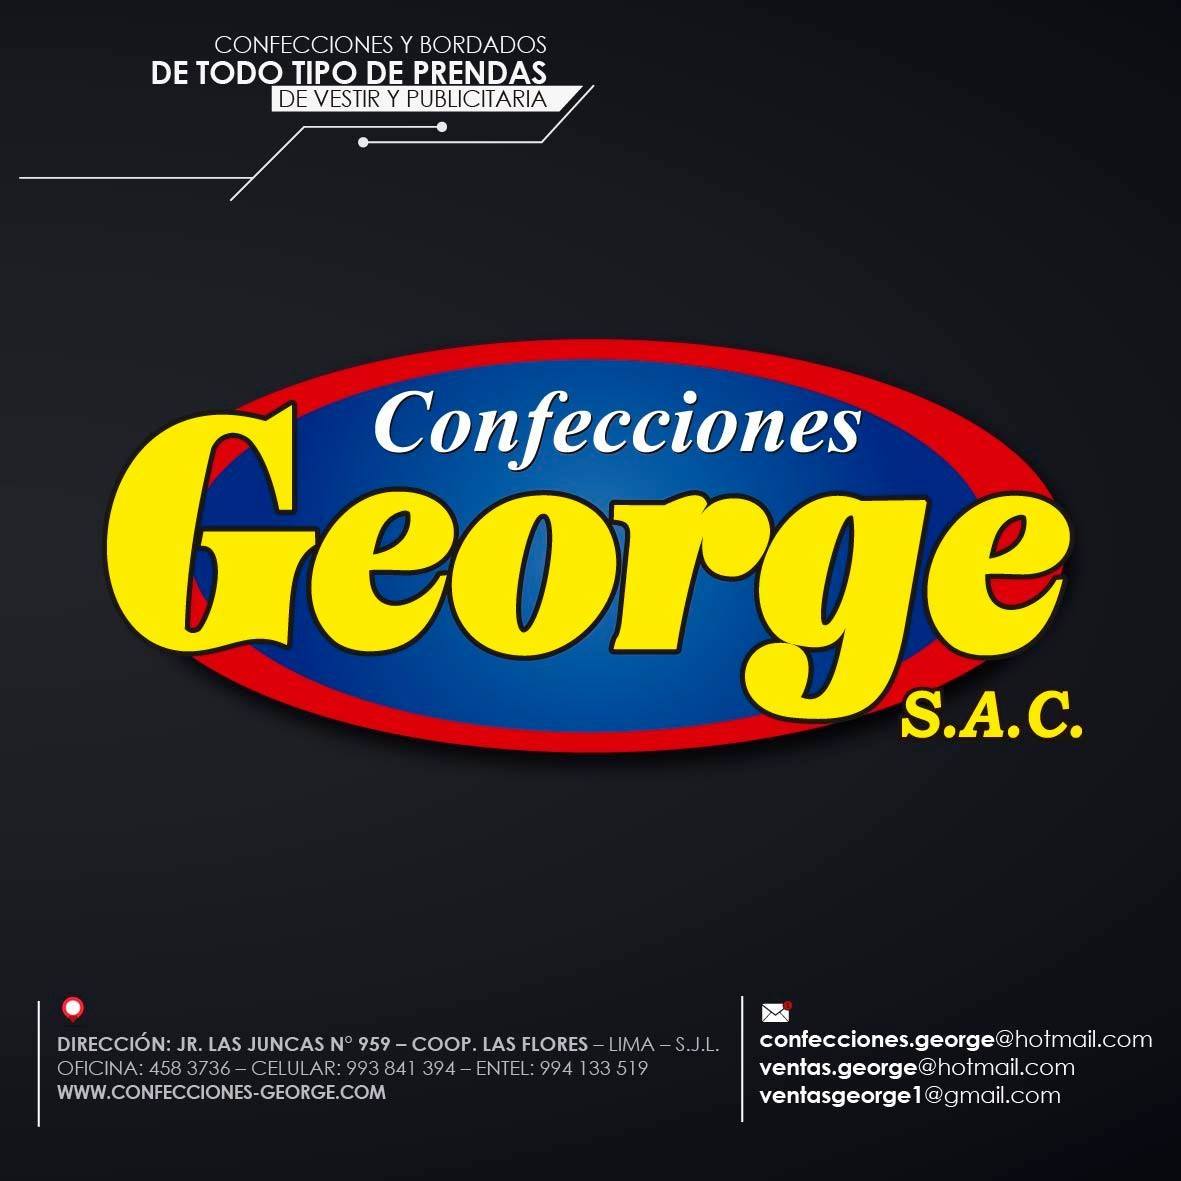 CONFECCIONES GEORGE SAC